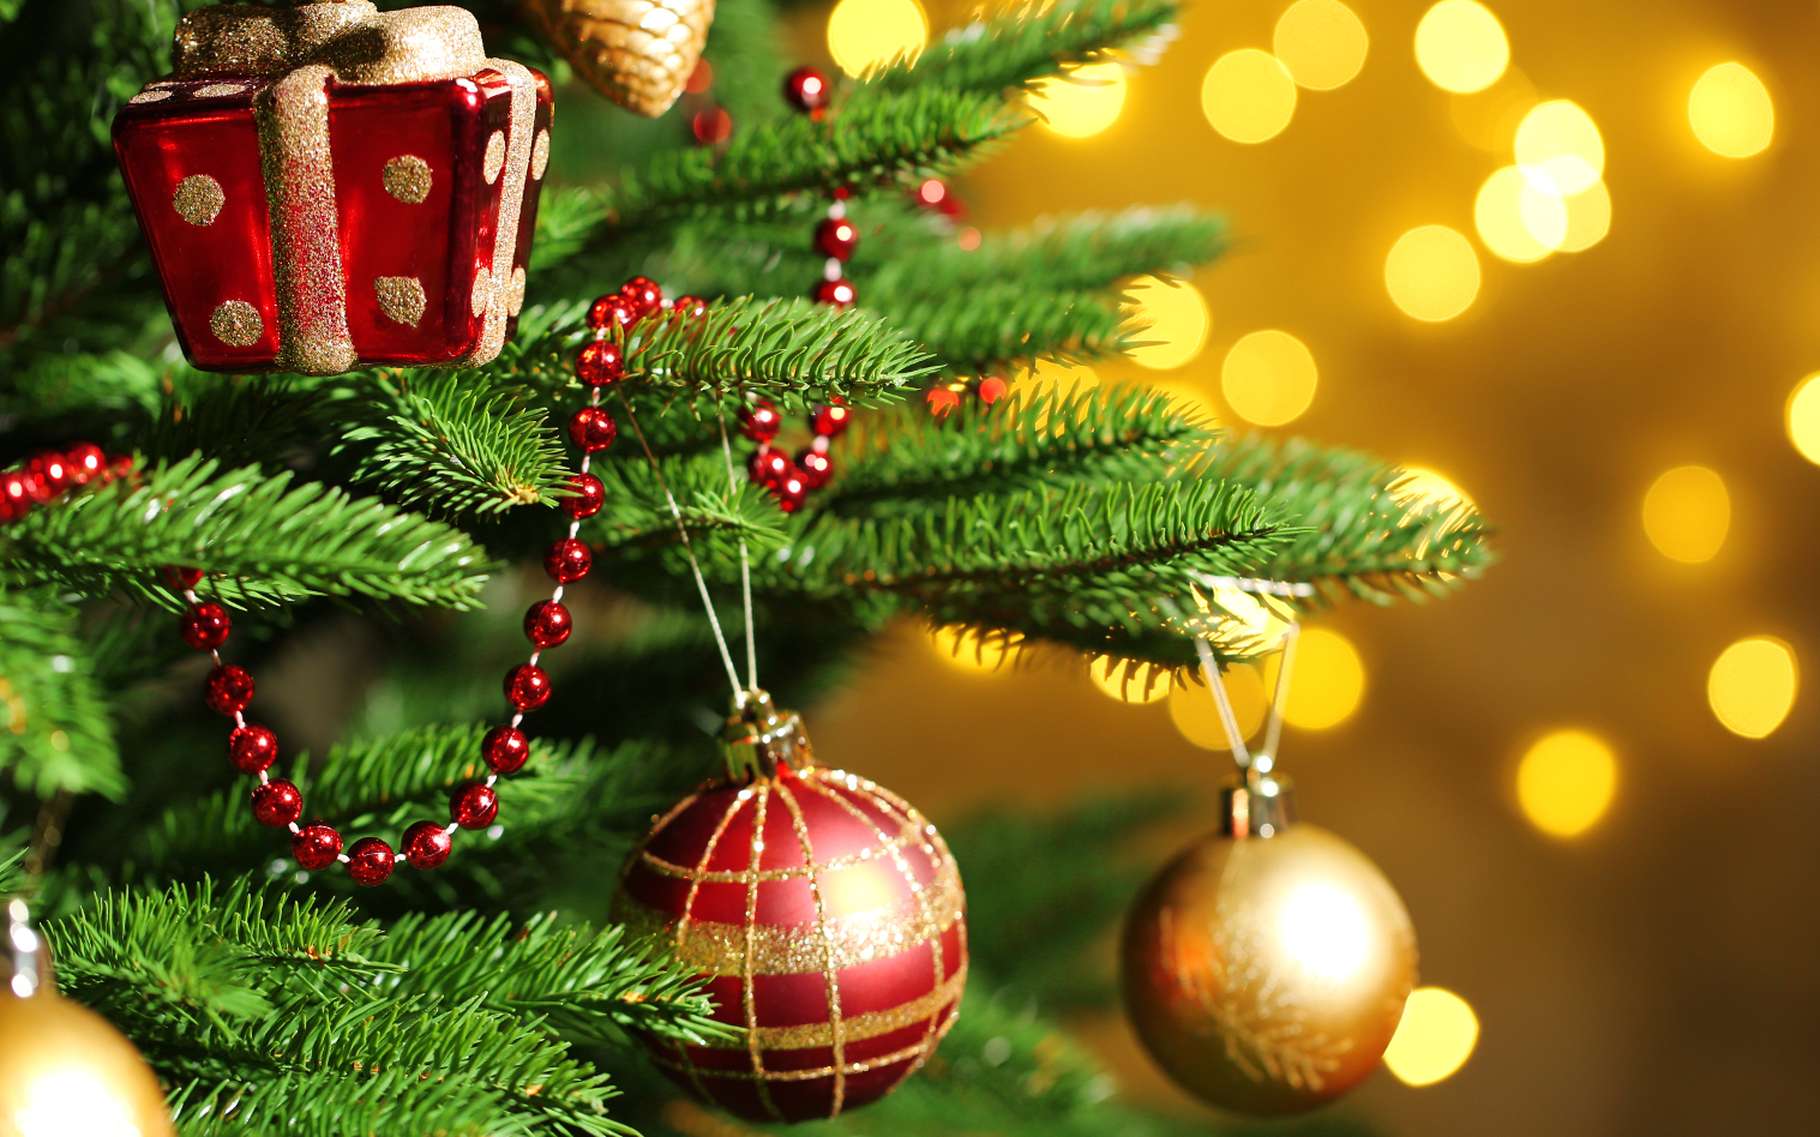 Pour Noël, notre liste d'idées de cadeaux originaux du Nord - Pas-de-Calais